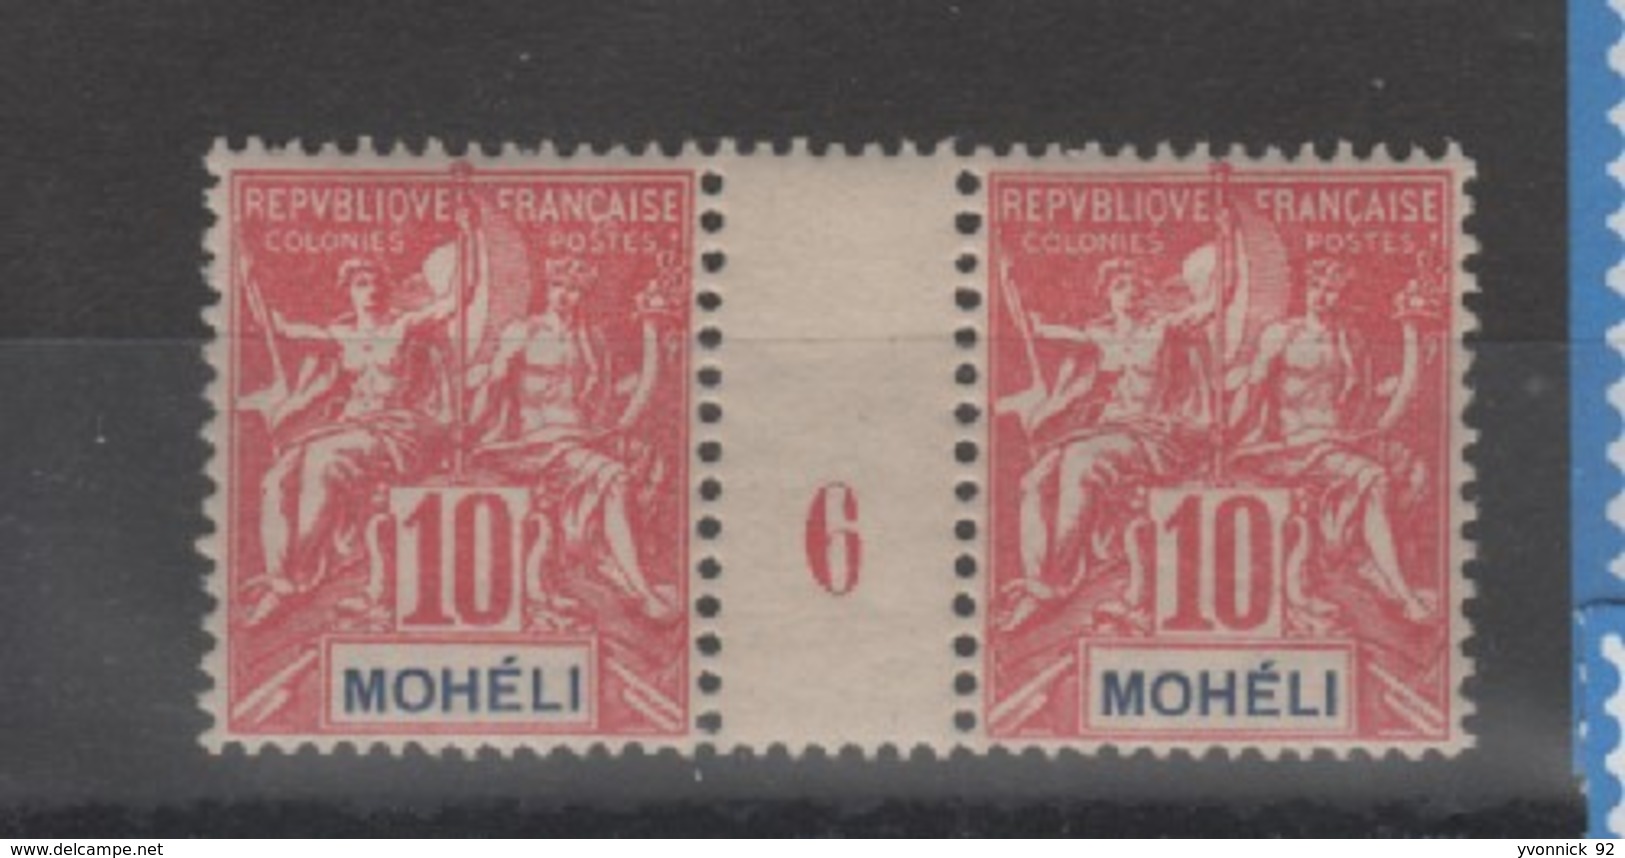 Mohélie _ Millésimes - 1906  _ N°5 Neuf - Unused Stamps